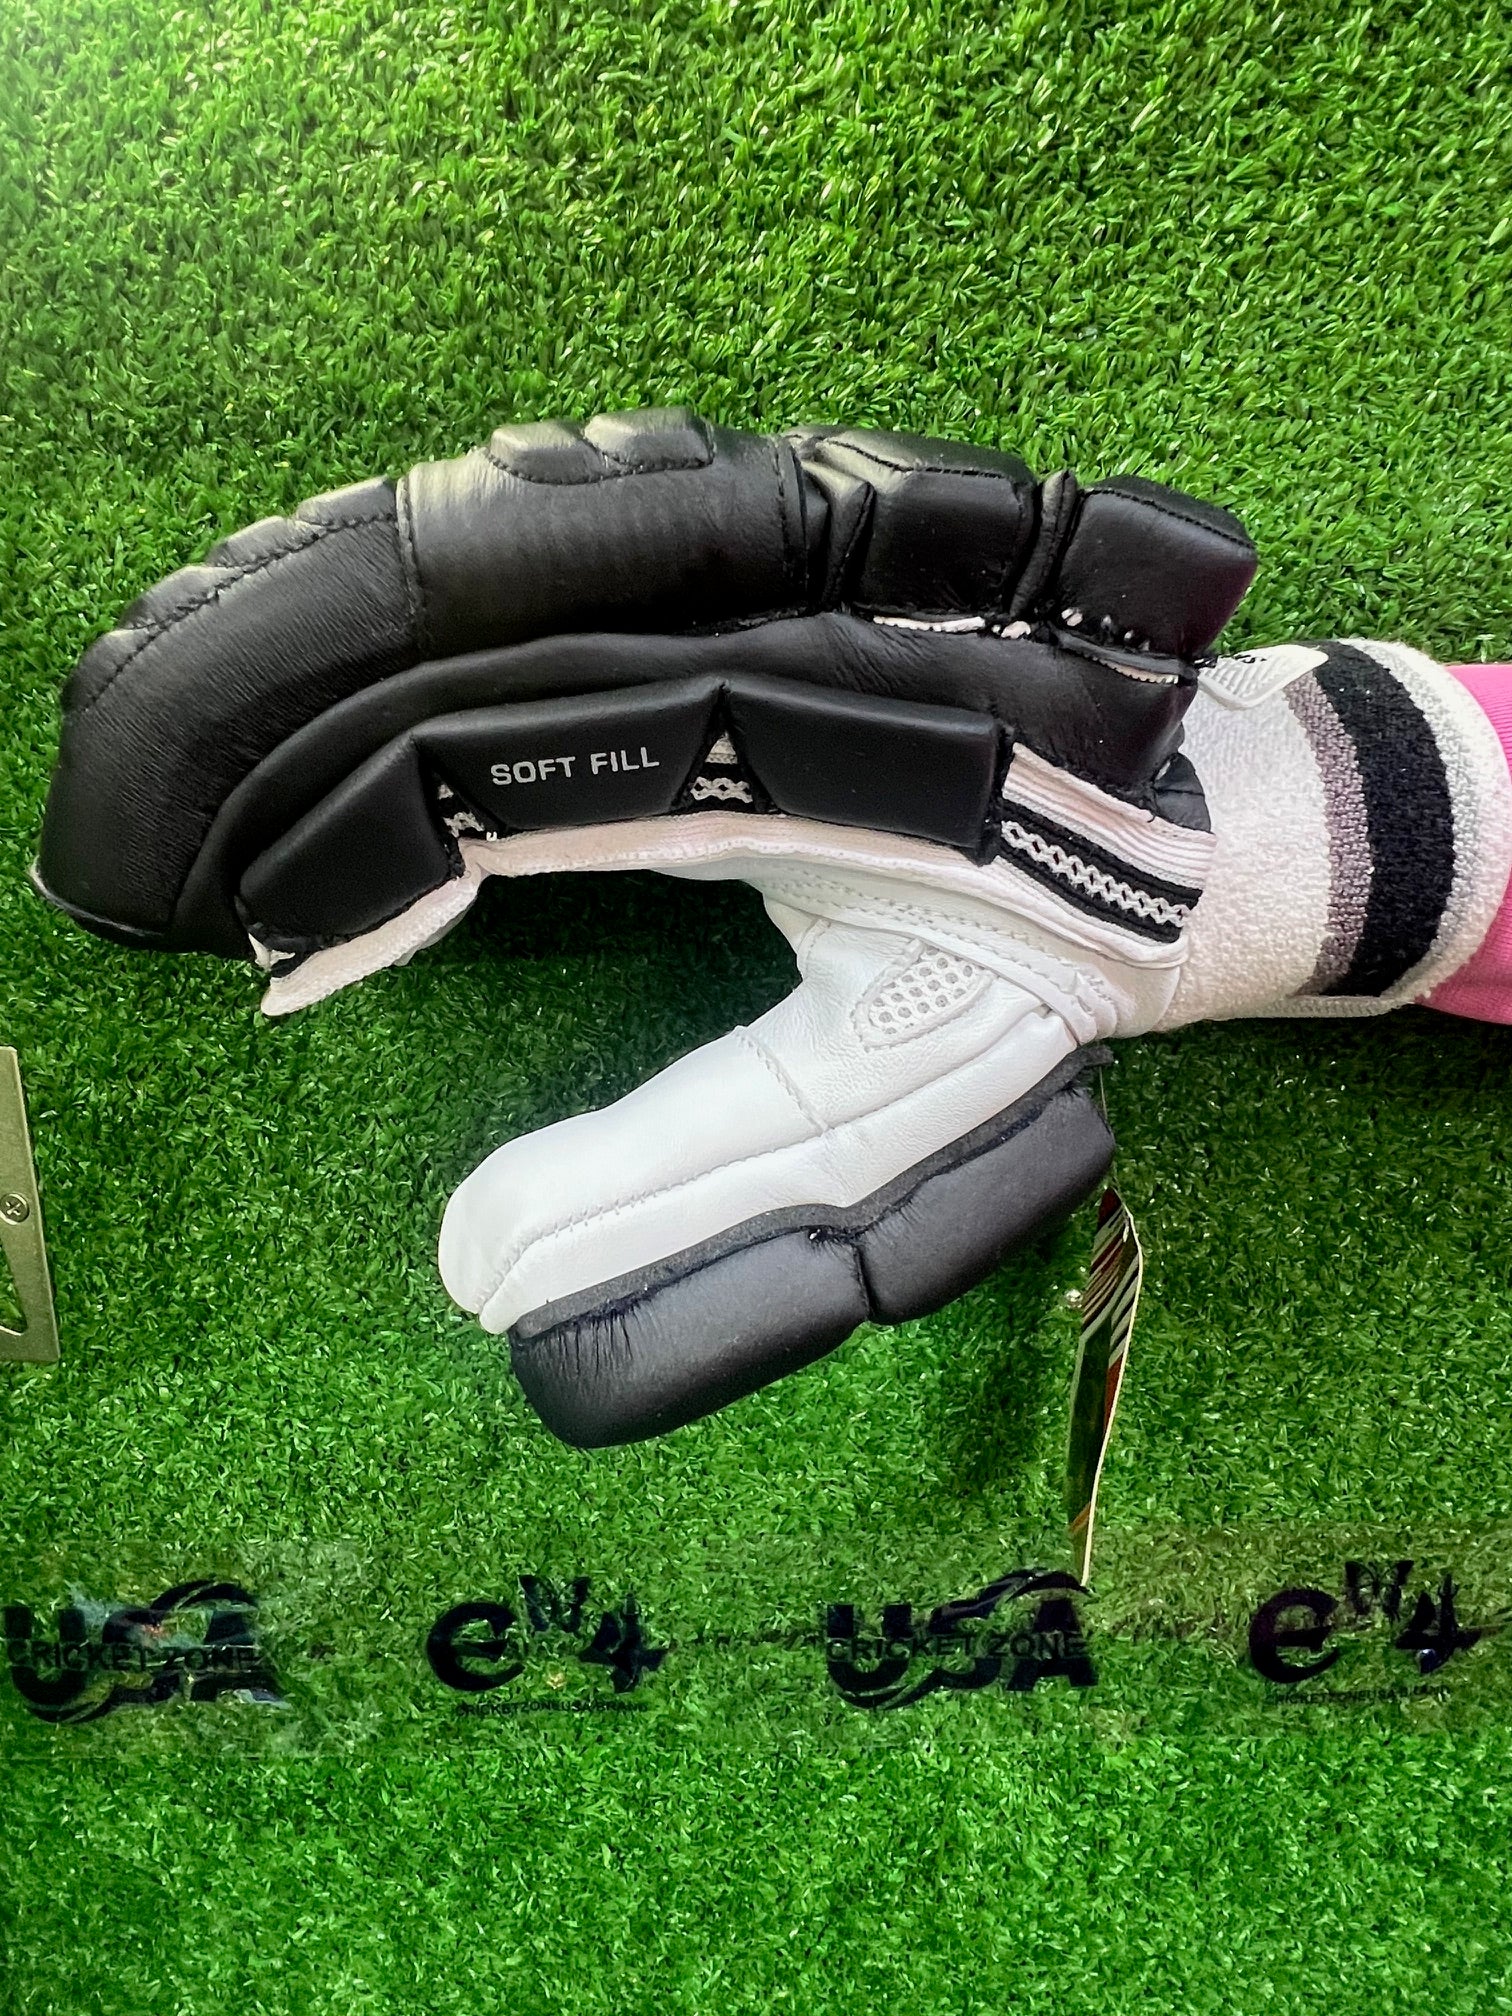 SS Super Test Black Colored Batting Gloves - 2024